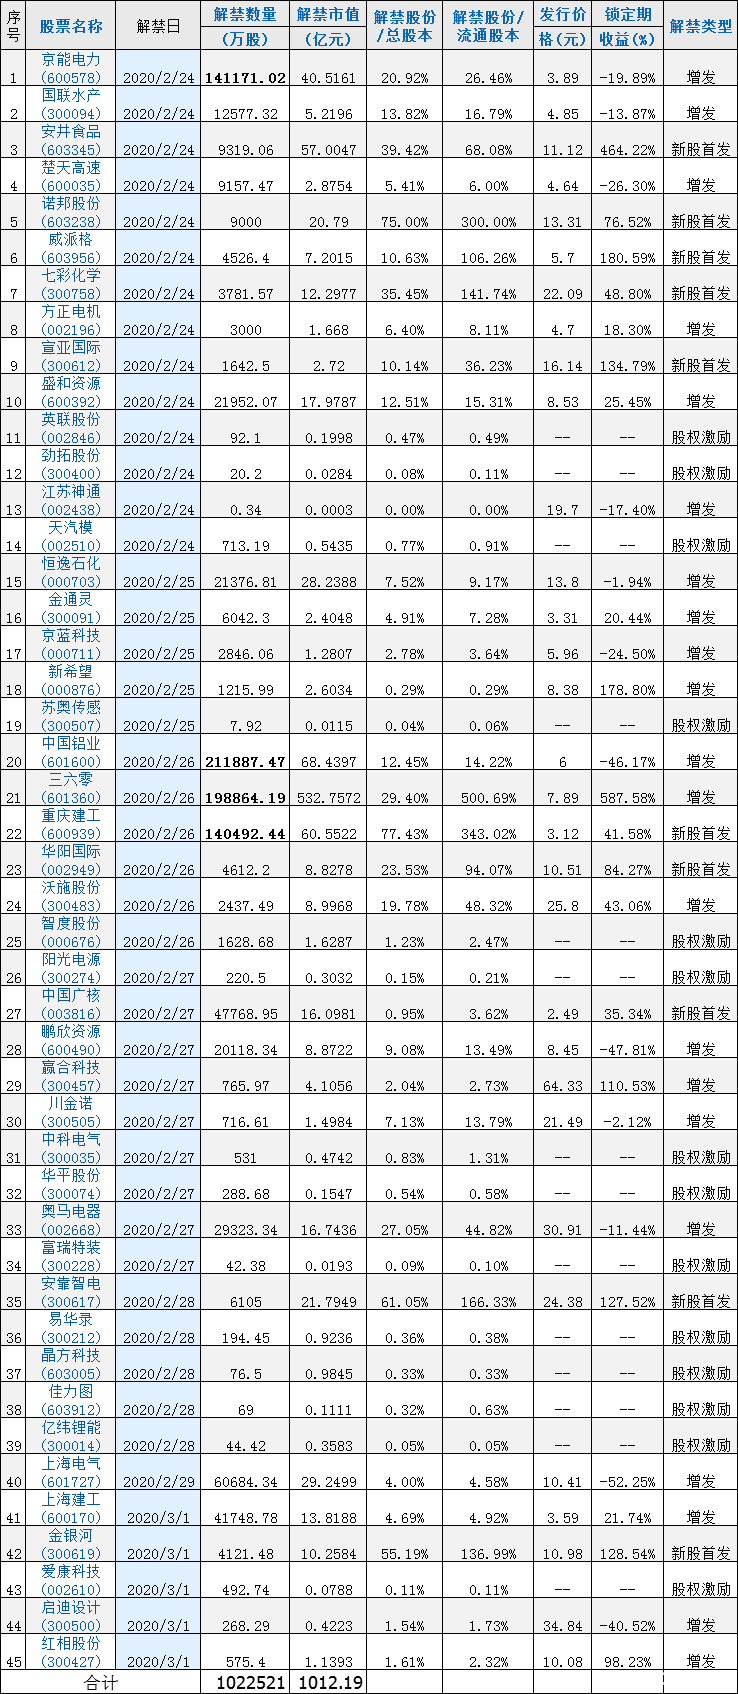 [加急]下周4家公司限售股解禁数量超10亿股 中国铝业21.19亿股上市